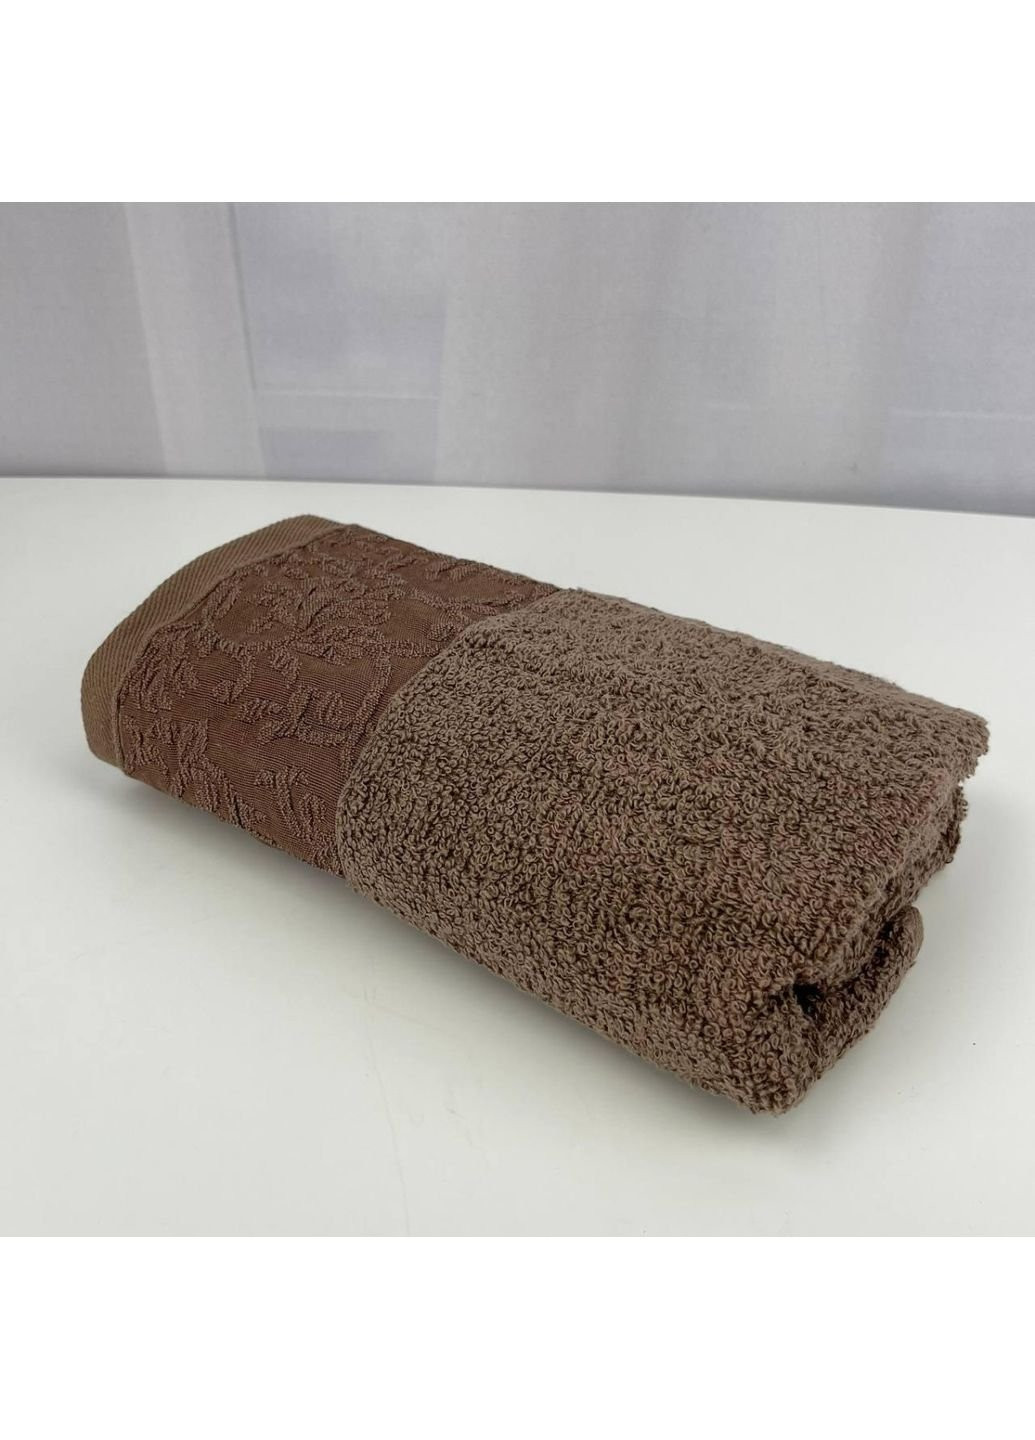 No Brand полотенце для лица махровое febo vip cotton botan турция 6397 коричневое 50х90 см комбинированный производство - Украина